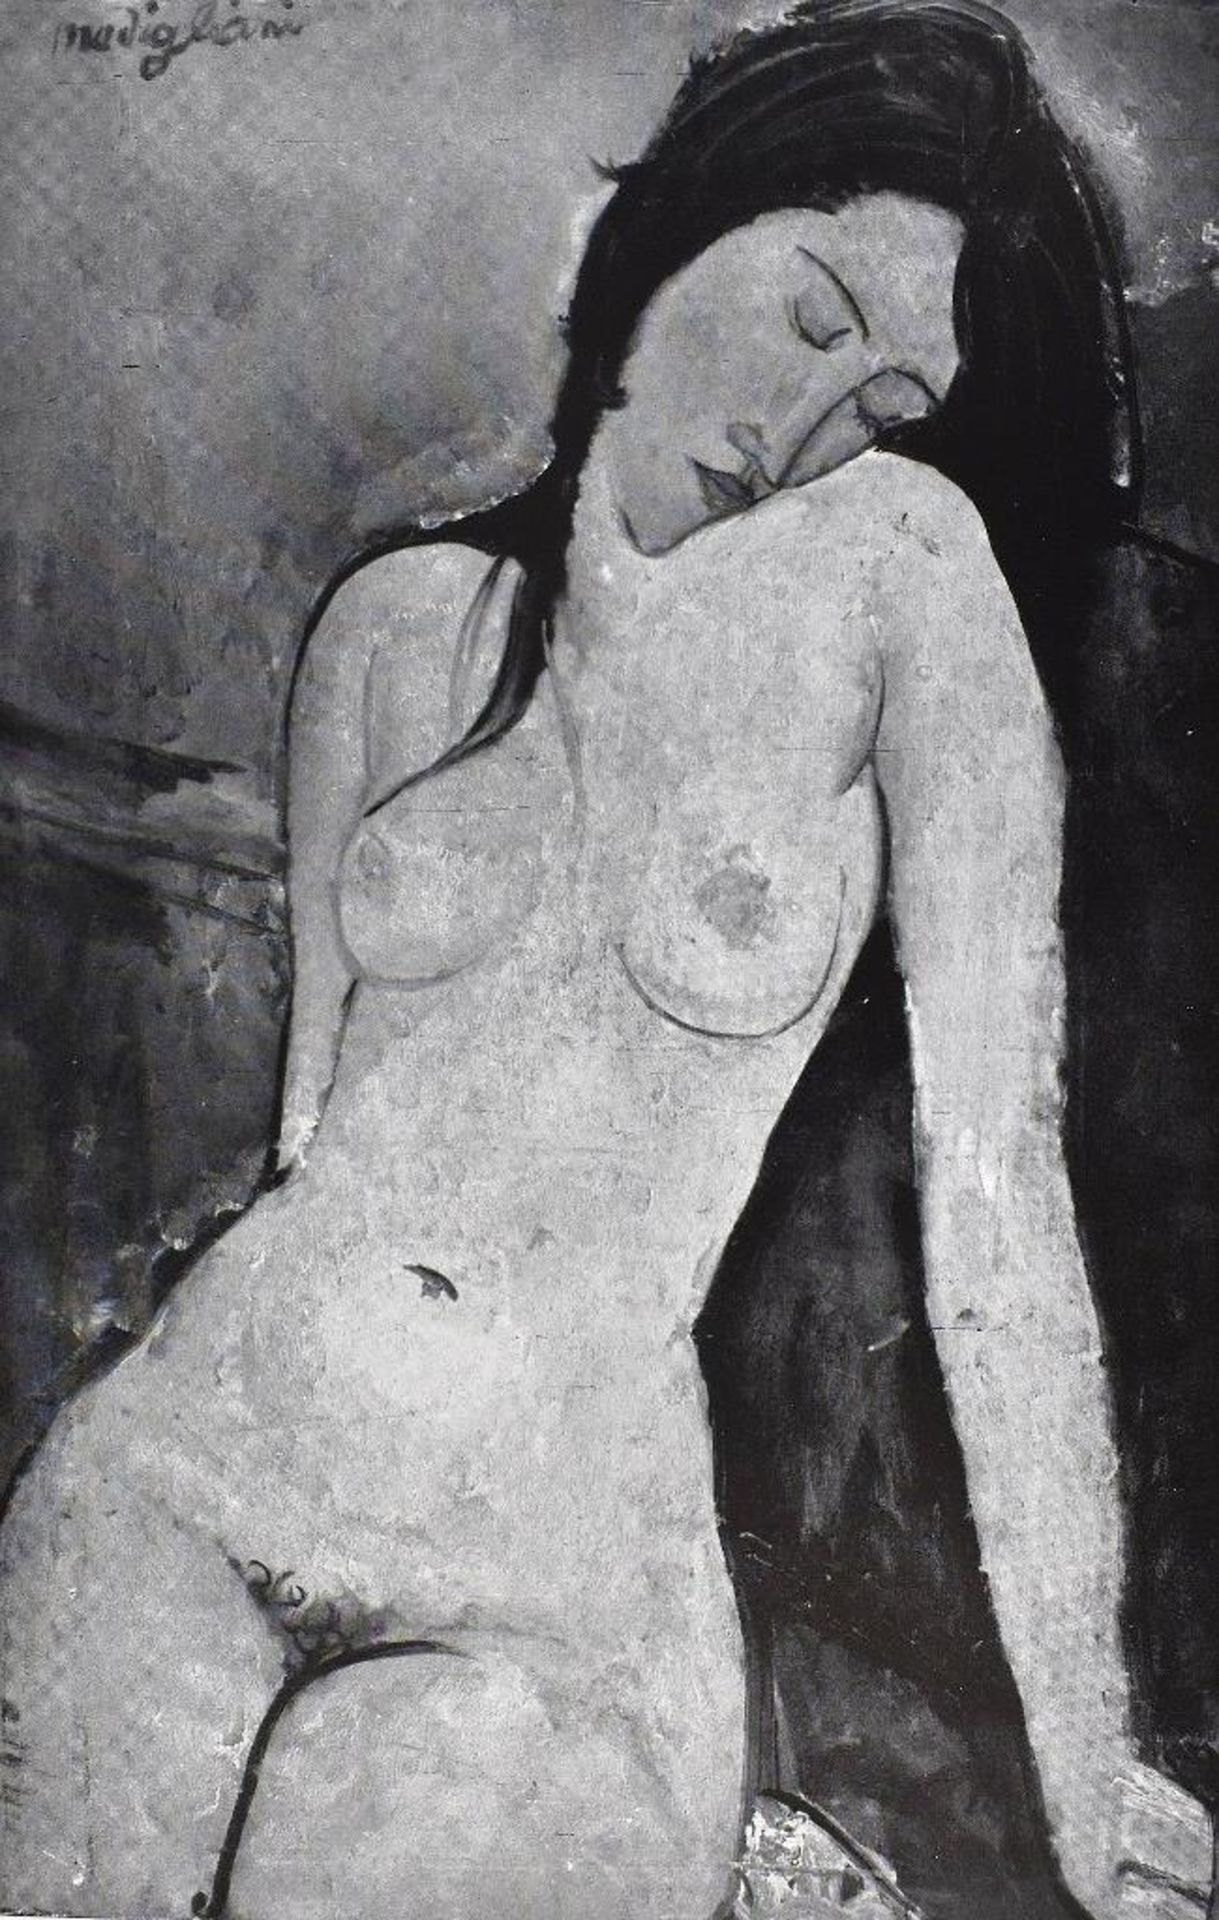 Ceroni, Ambrogio. Amedeo Modigliani Peintre. Suivi des "Souvenirs" de Lunia Czechowska. Edizioni del